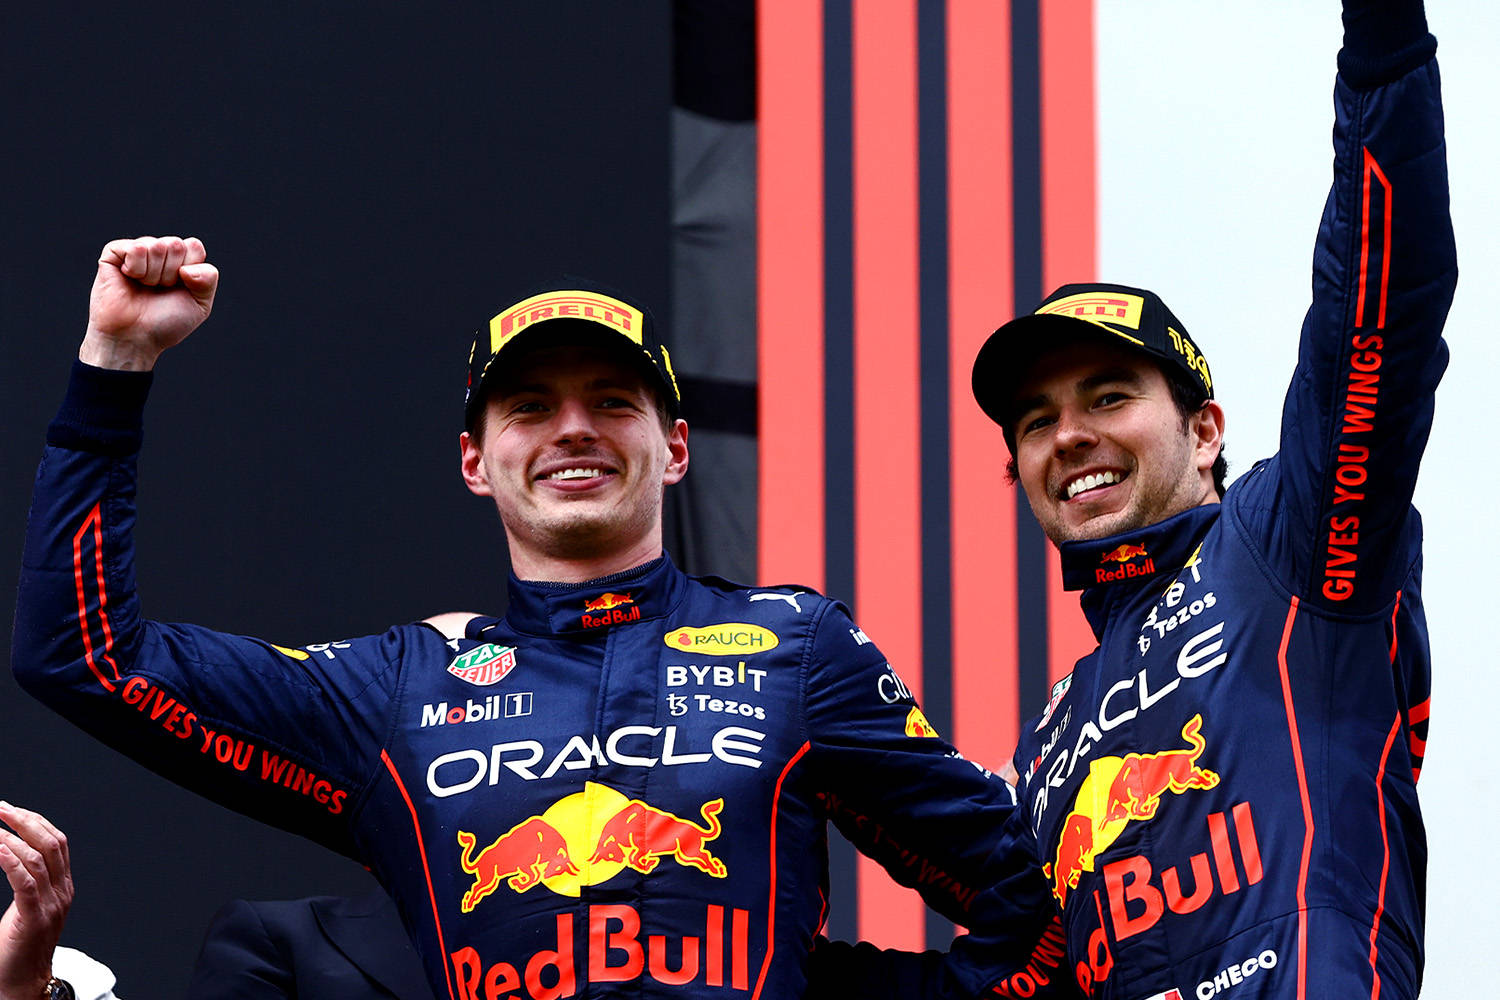 Red Bull Racing Drivers Celebrating Wallpaper